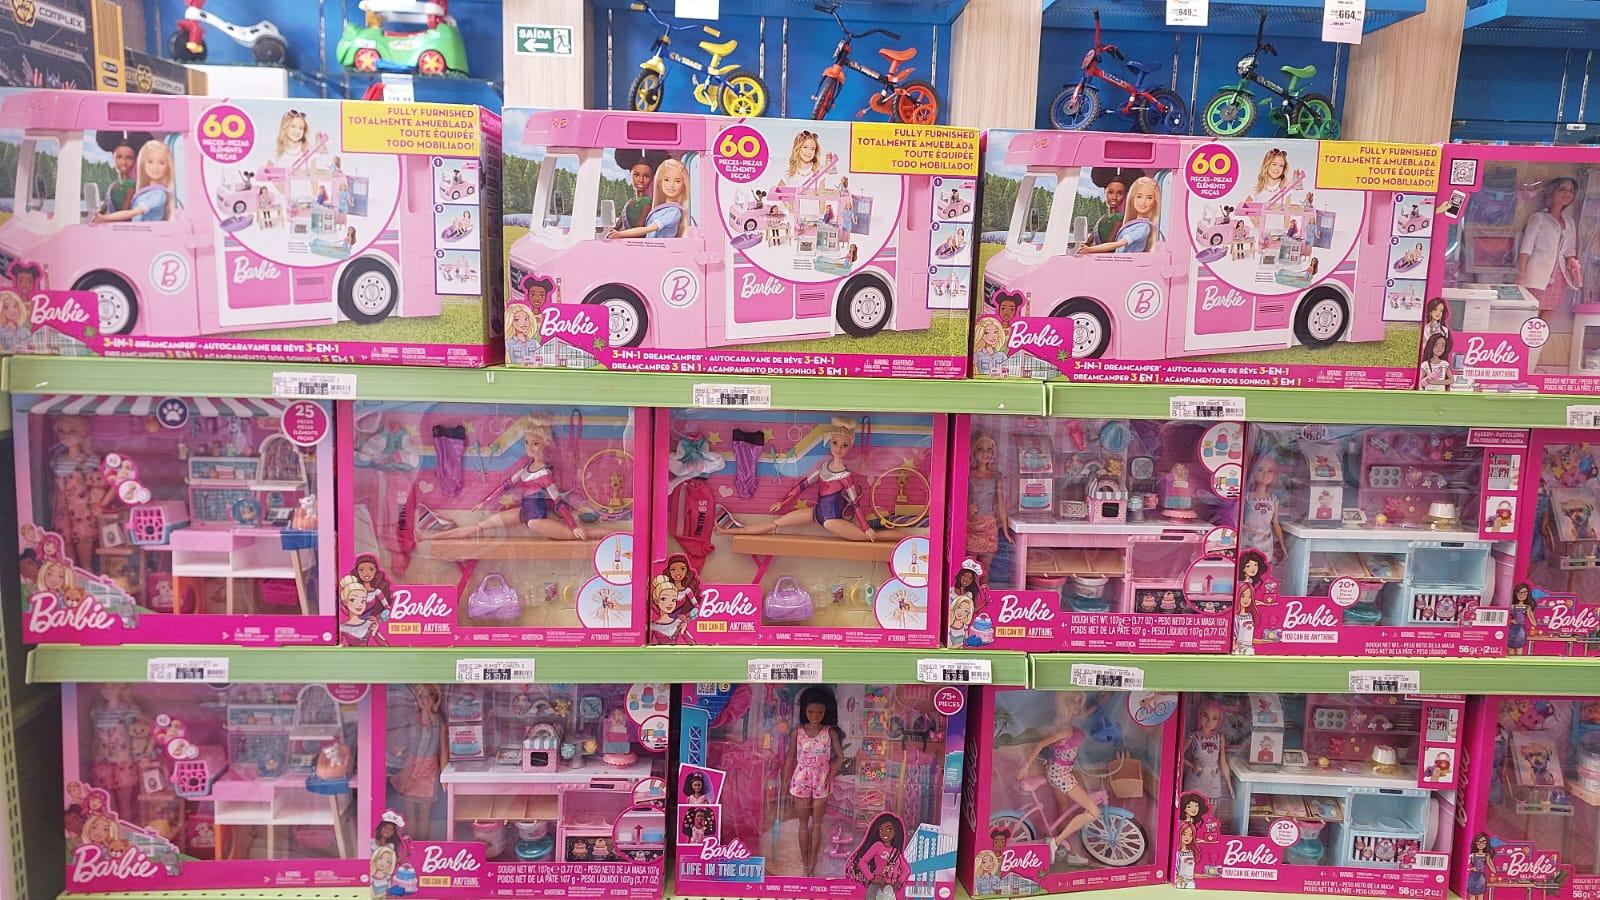 20 Unidades Roupinhas Roupas Boneca Barbie Brarato em Promoção na Americanas